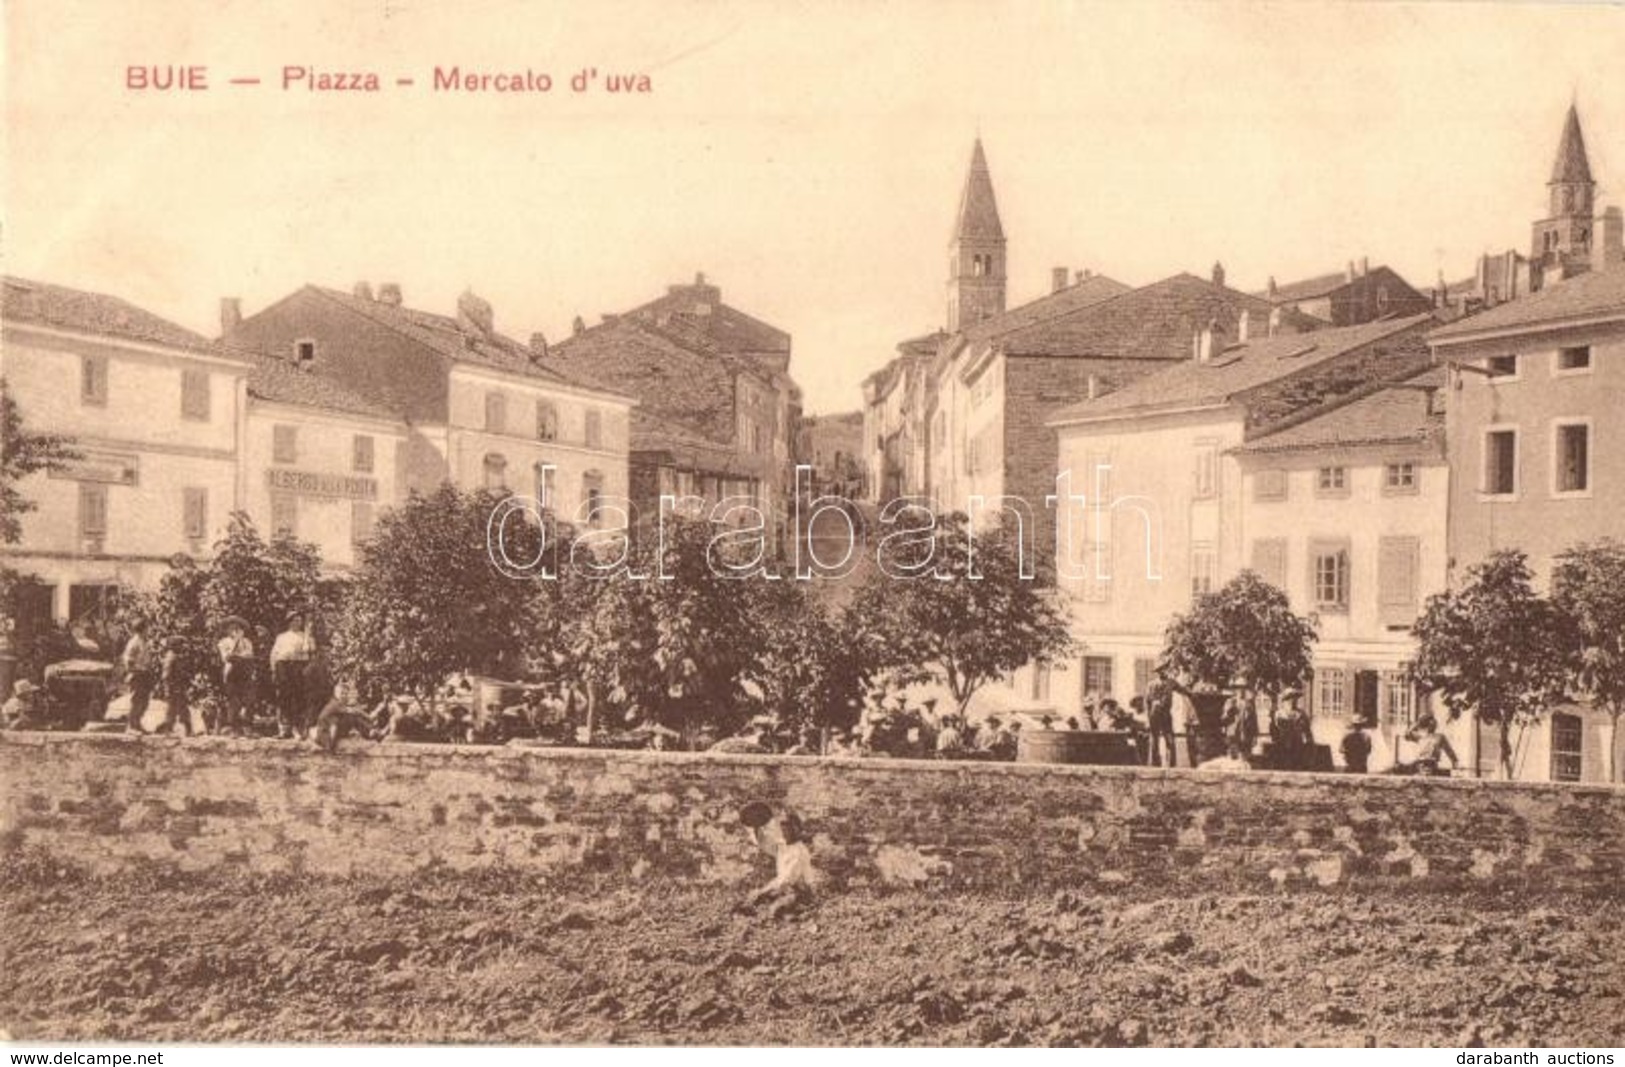 T2/T3 1912 Buje, Buie; Piazza, Mercato D'uva, Albergo Alla Posta / Szőlőpiac A Téren, Piaci árusok, Szálloda / Grape Mar - Unclassified